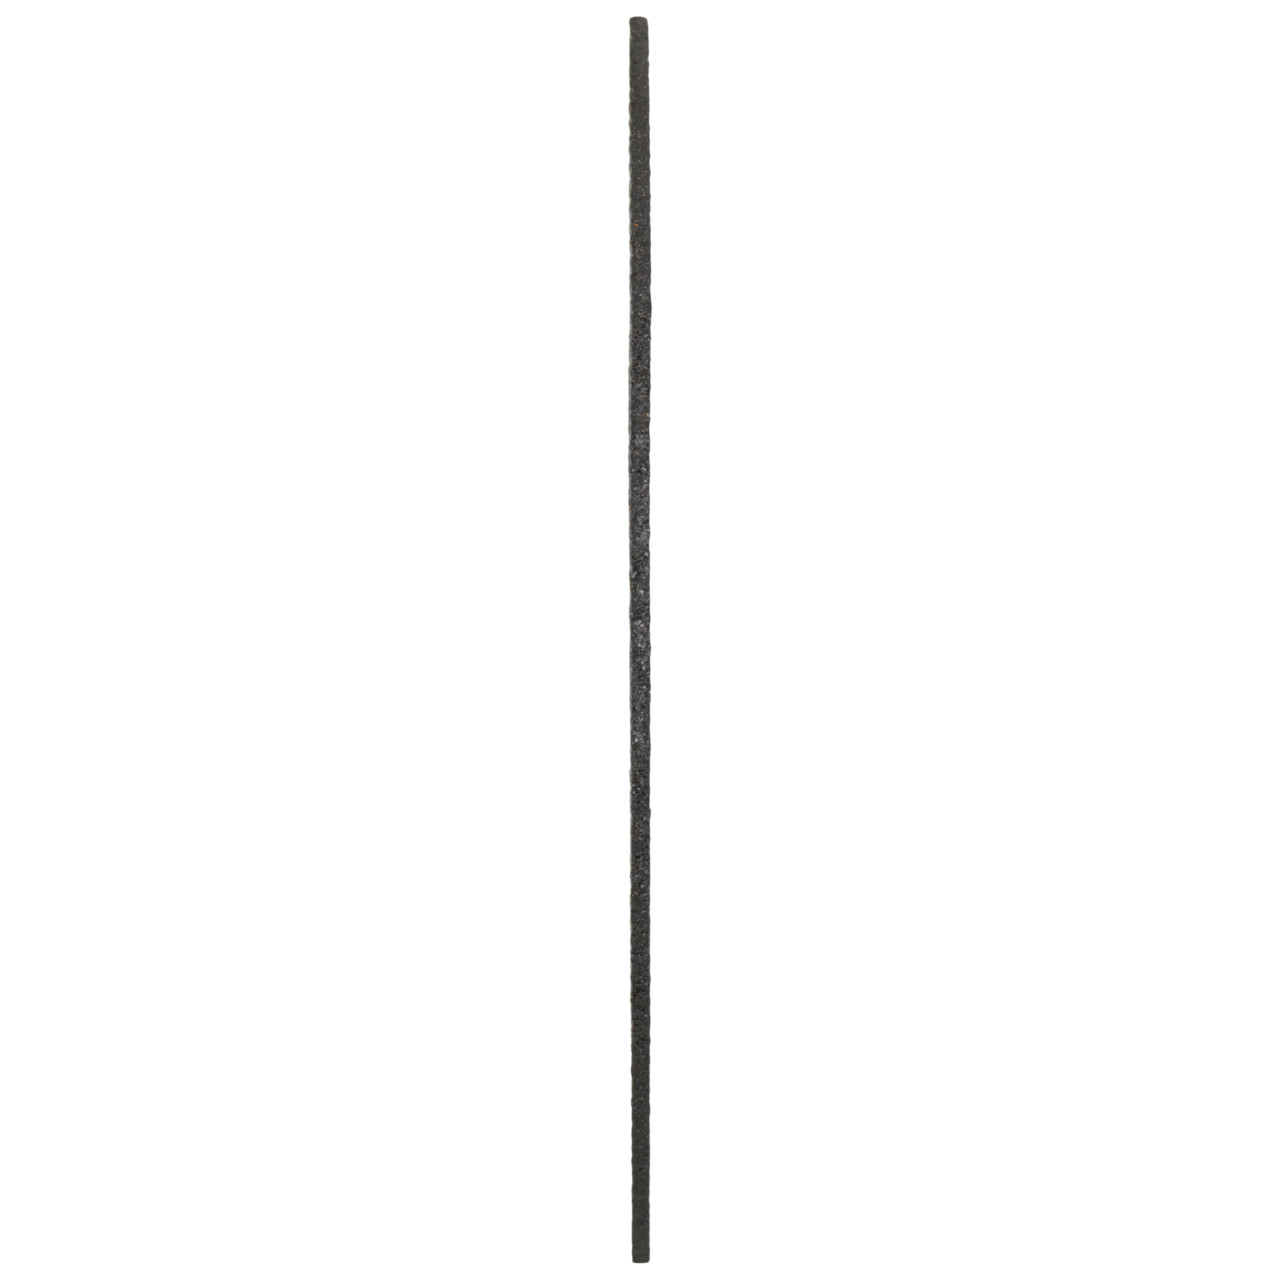 Tyrolit Snijschijven DxDxH 115x1,6x22,23 2in1 voor staal en roestvrij staal, vorm: 41 - rechte uitvoering, Art. 34332872